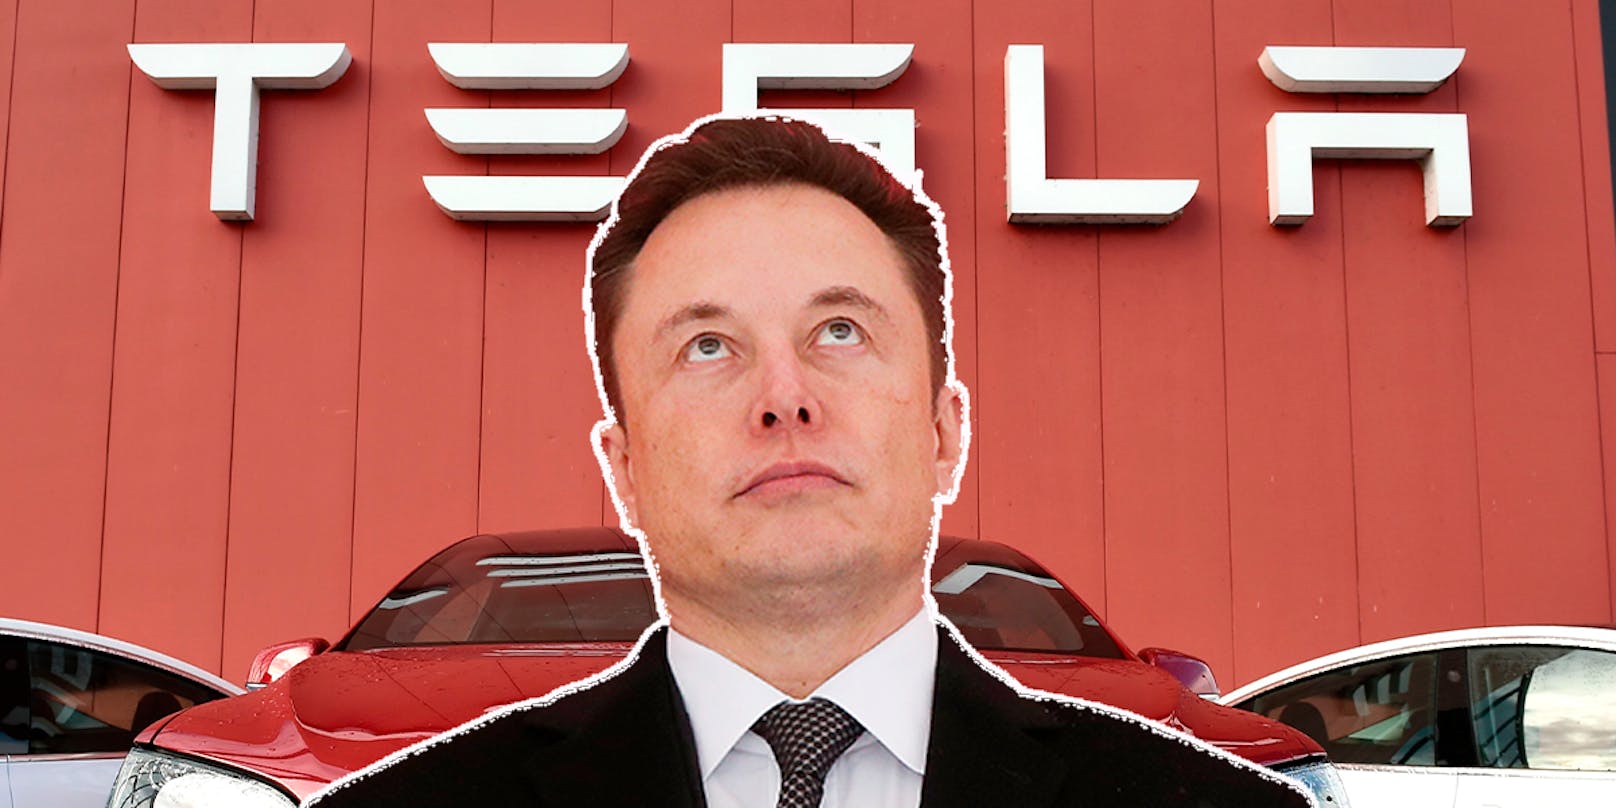 Der Multimilliardär <strong>Elon Musk</strong> wird für Mängel bei Tesla kritisiert.